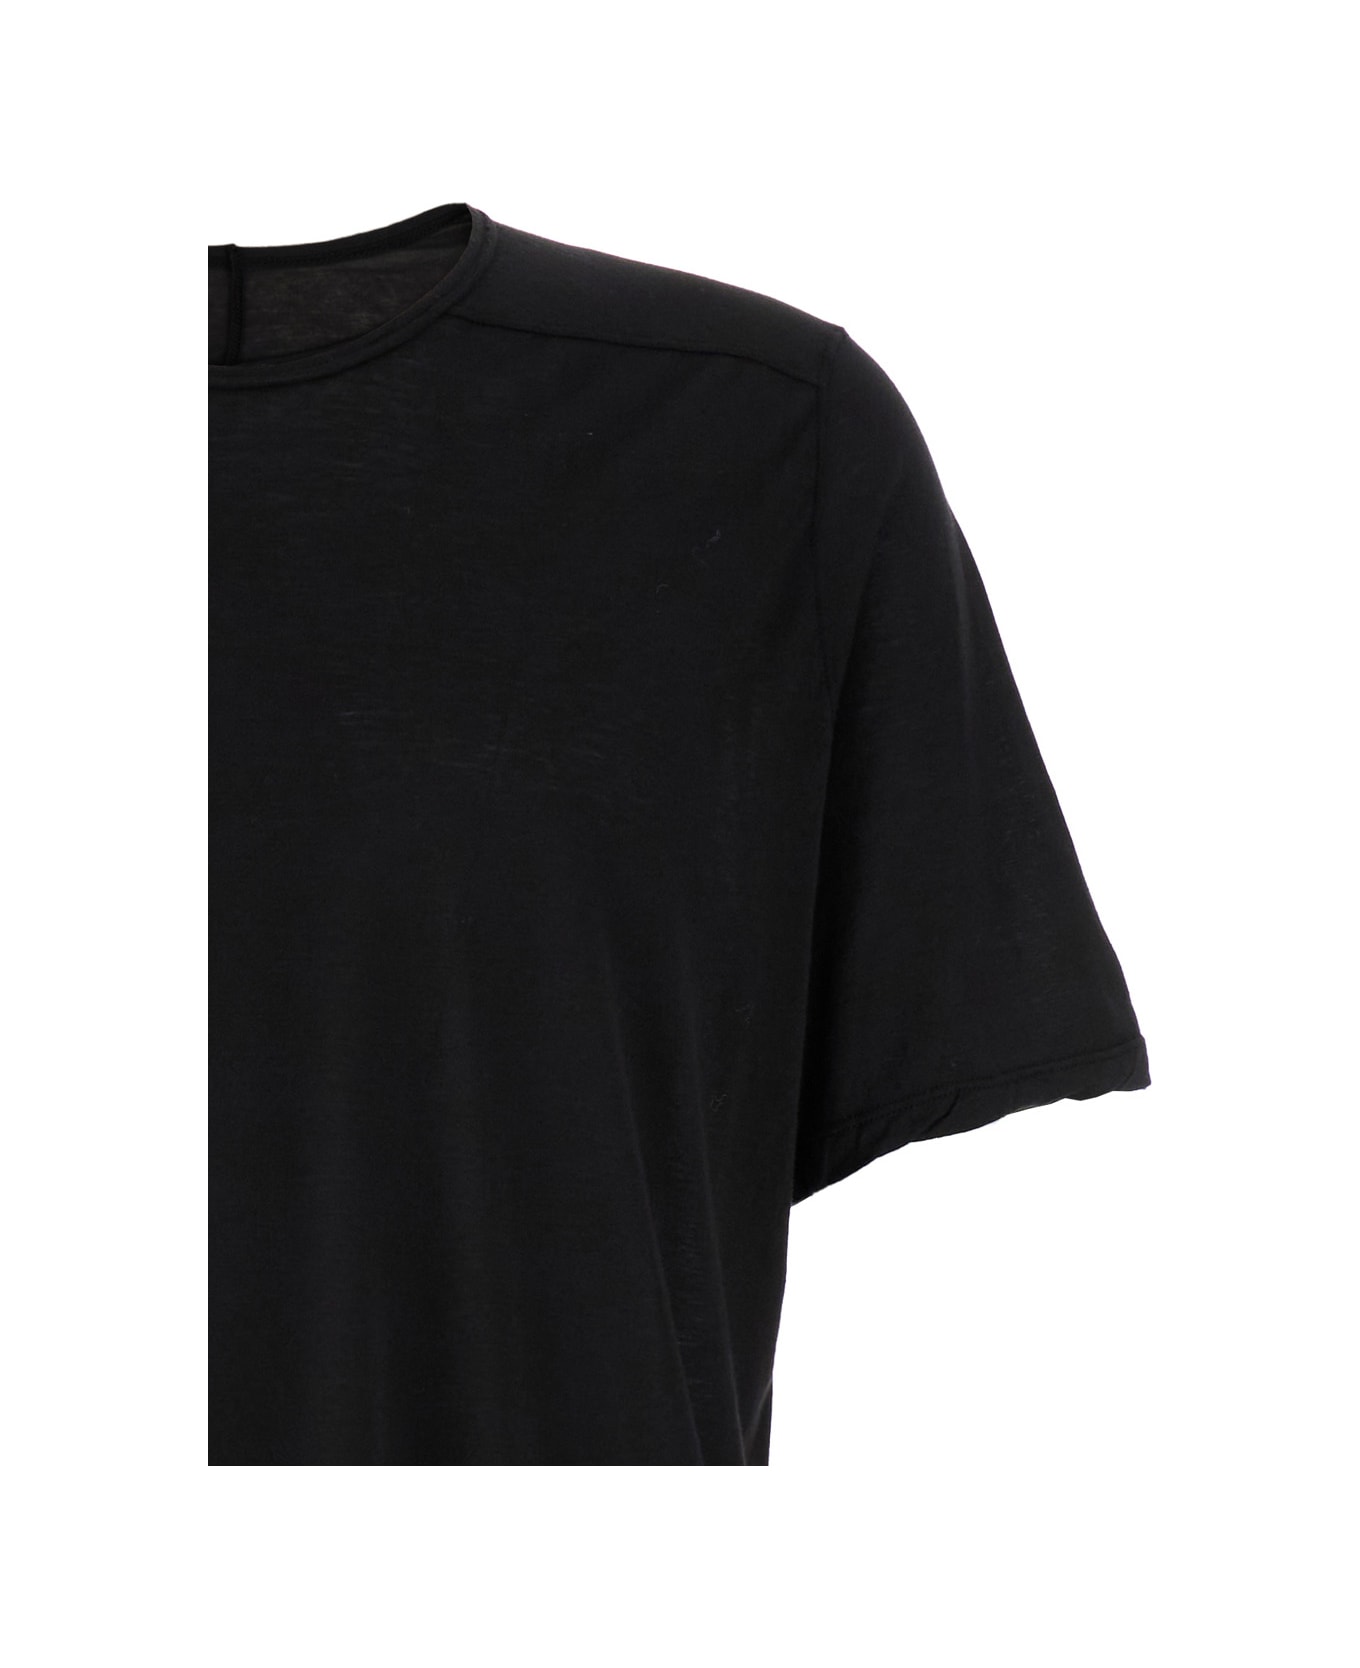 DRKSHDW T-shirt - Level T - Black